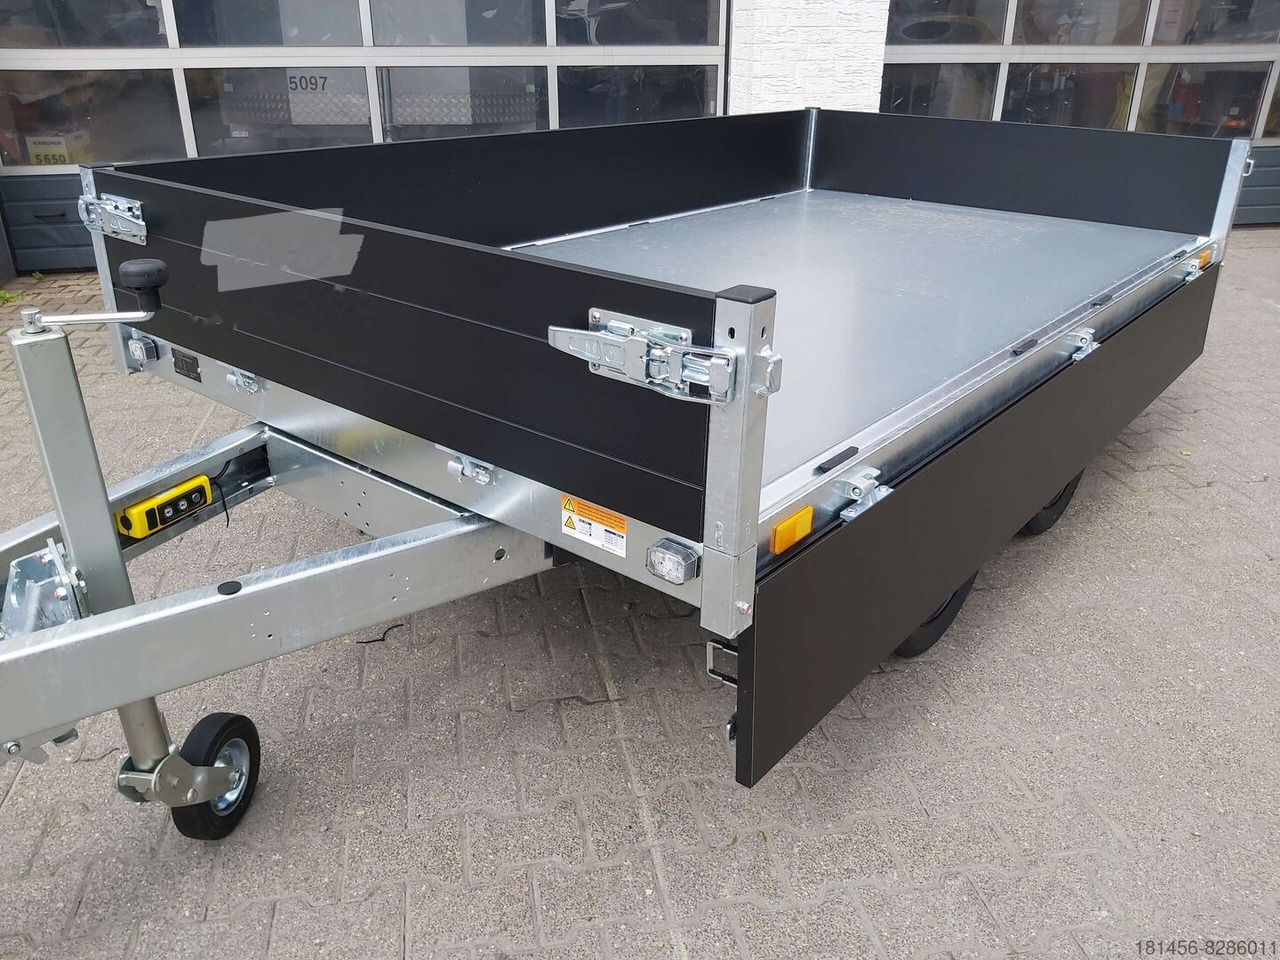 Saris Heckkipper K1 276 150 2700kg elektro direkt verfügbar jetzt kaufen - Tipper trailer: picture 5